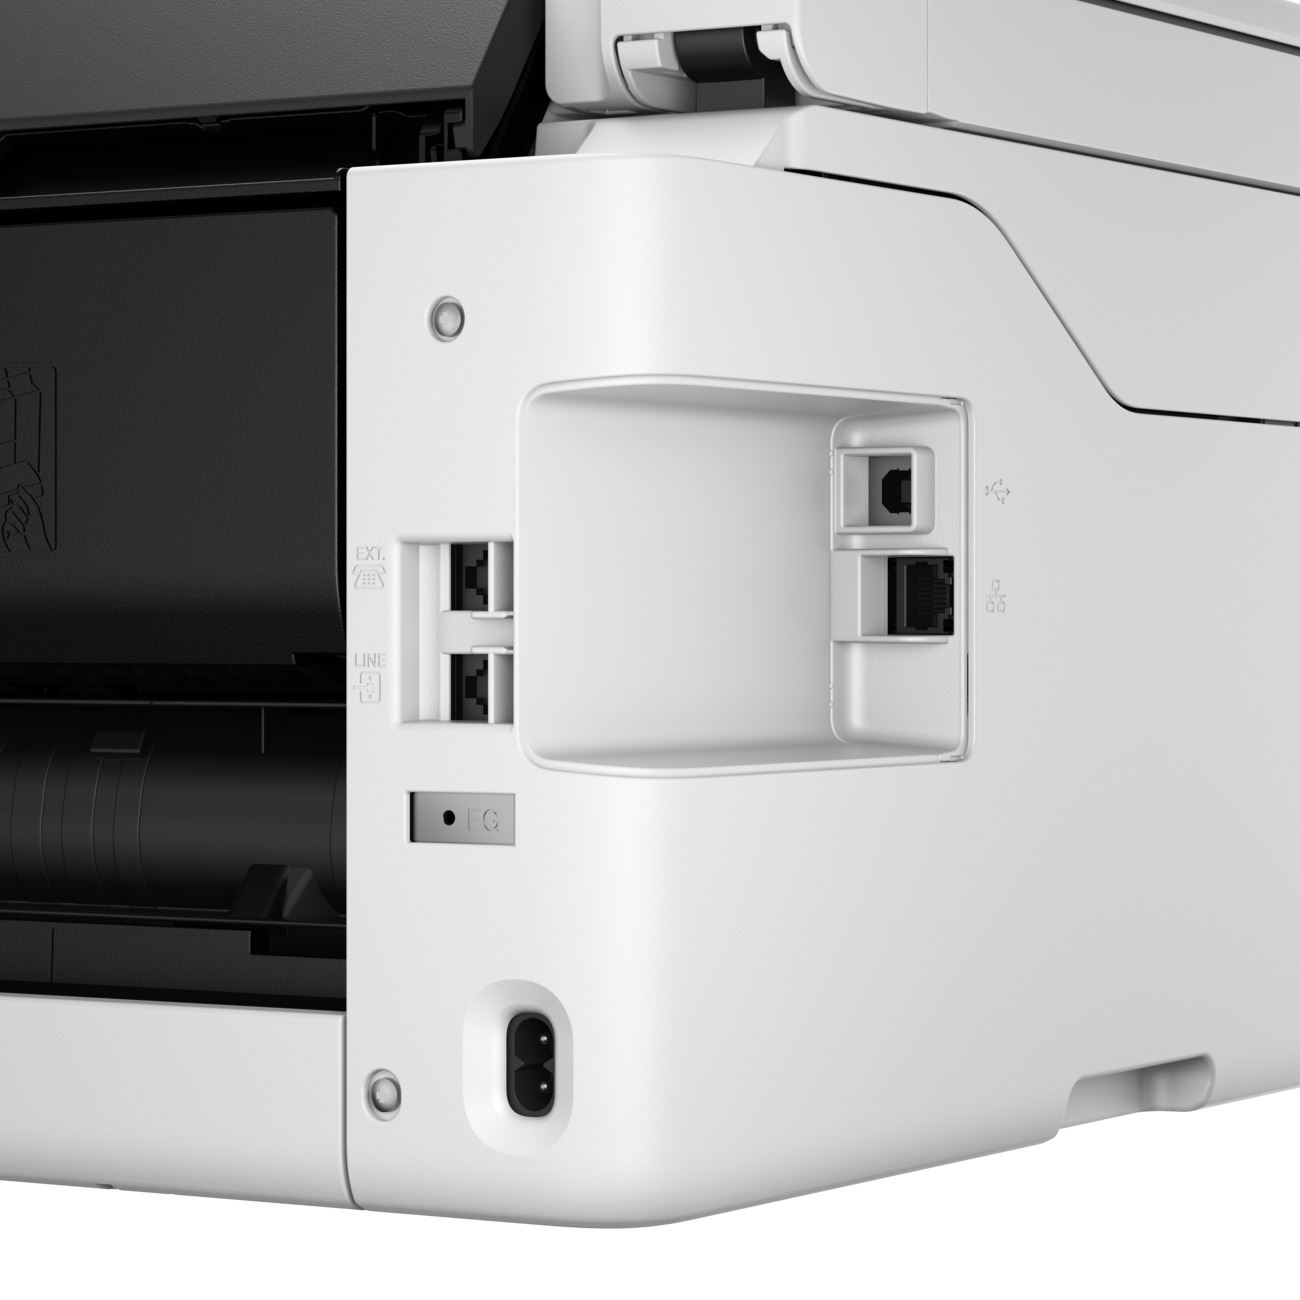 Canon MAXIFY šedá GX4040 (doplnitelné zásobníky inkoustu) - MF (tisk, kopírka, sken, fax, cloud),  USB,  Wi-Fi,  A4 18/ min.3 